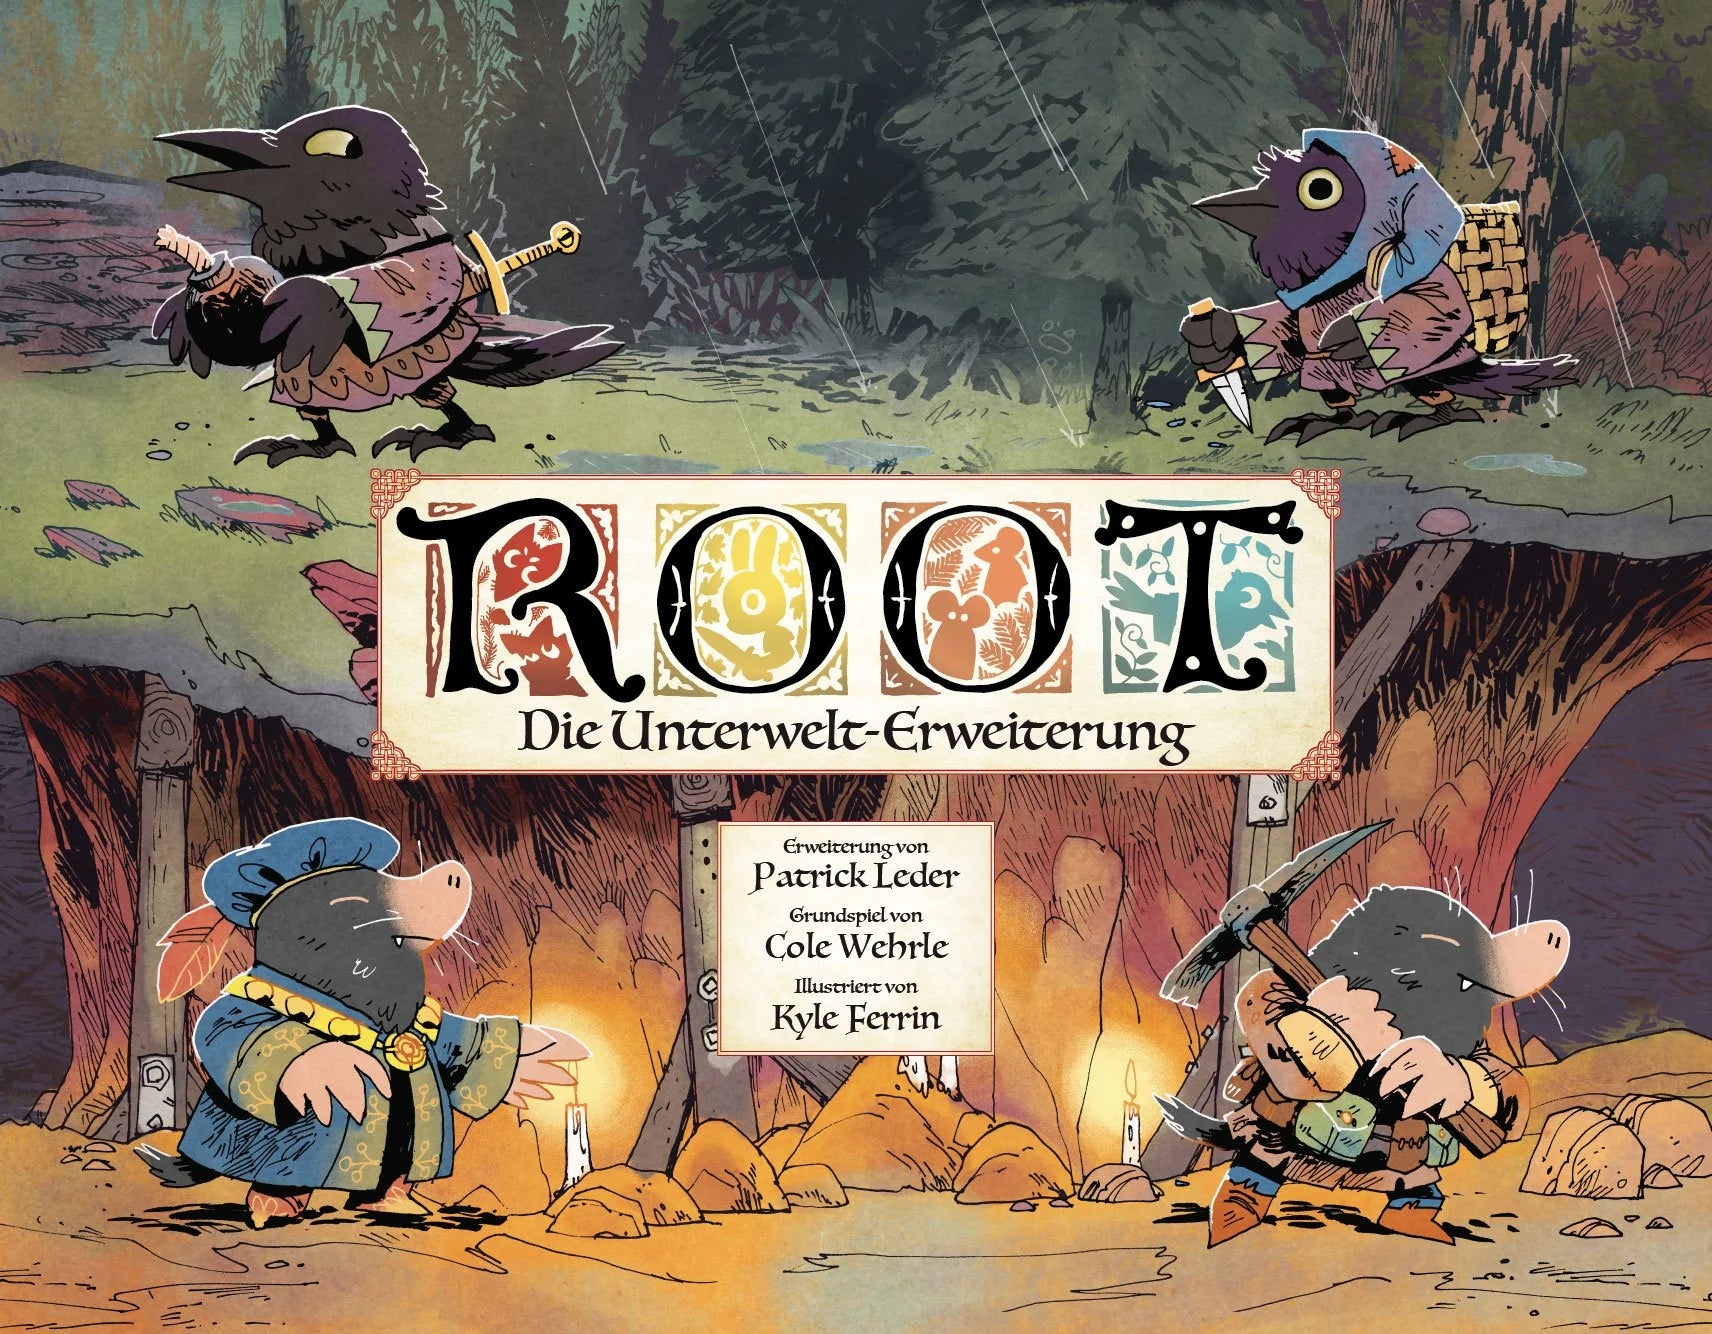 Root - Die Unterwelt-Erweiterung